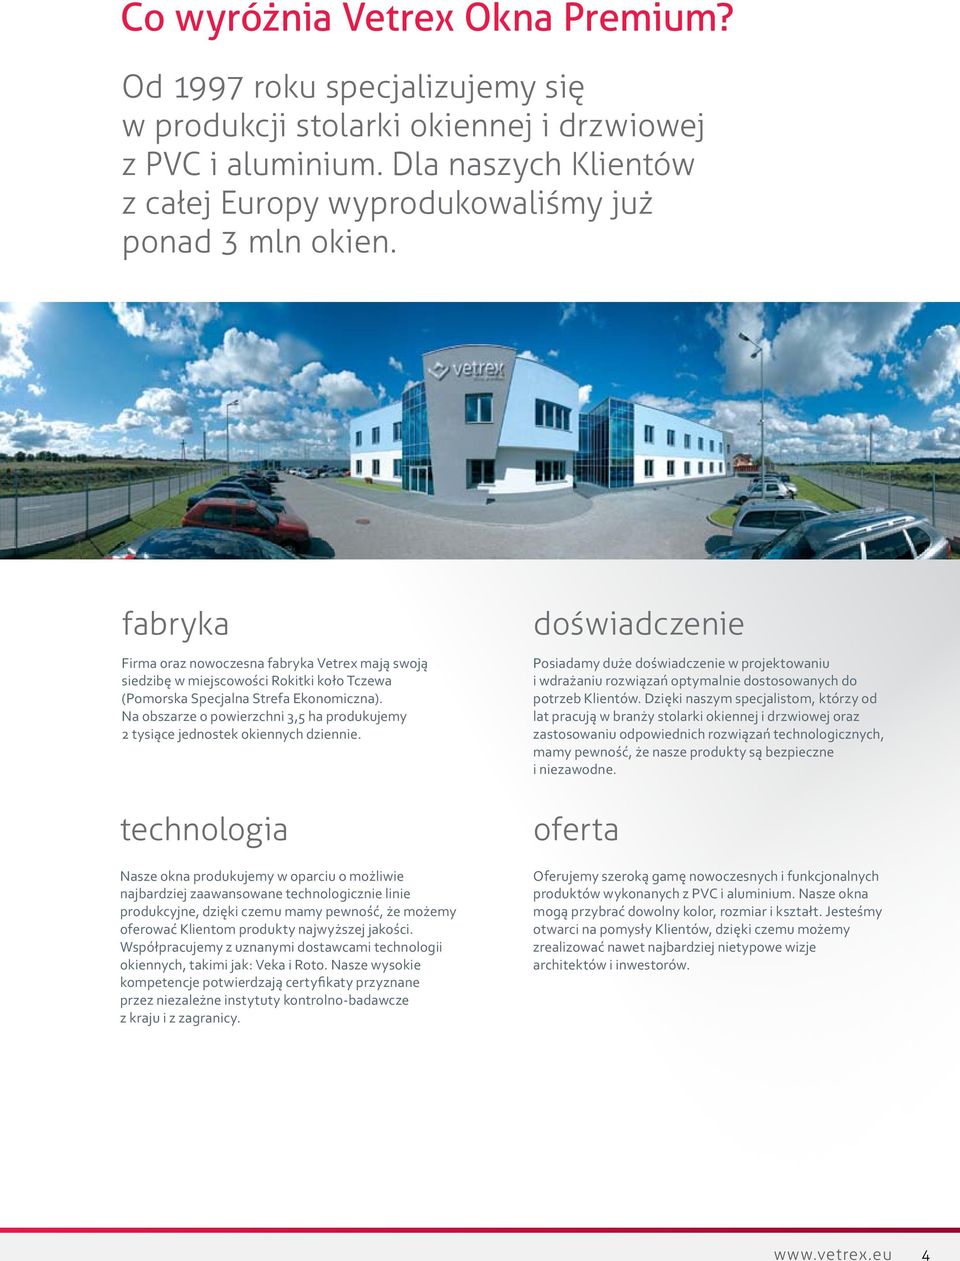 fabryka Firma oraz nowoczesna fabryka Vetrex mają swoją siedzibę w miejscowości Rokitki koło Tczewa (Pomorska Specjalna Strefa Ekonomiczna).